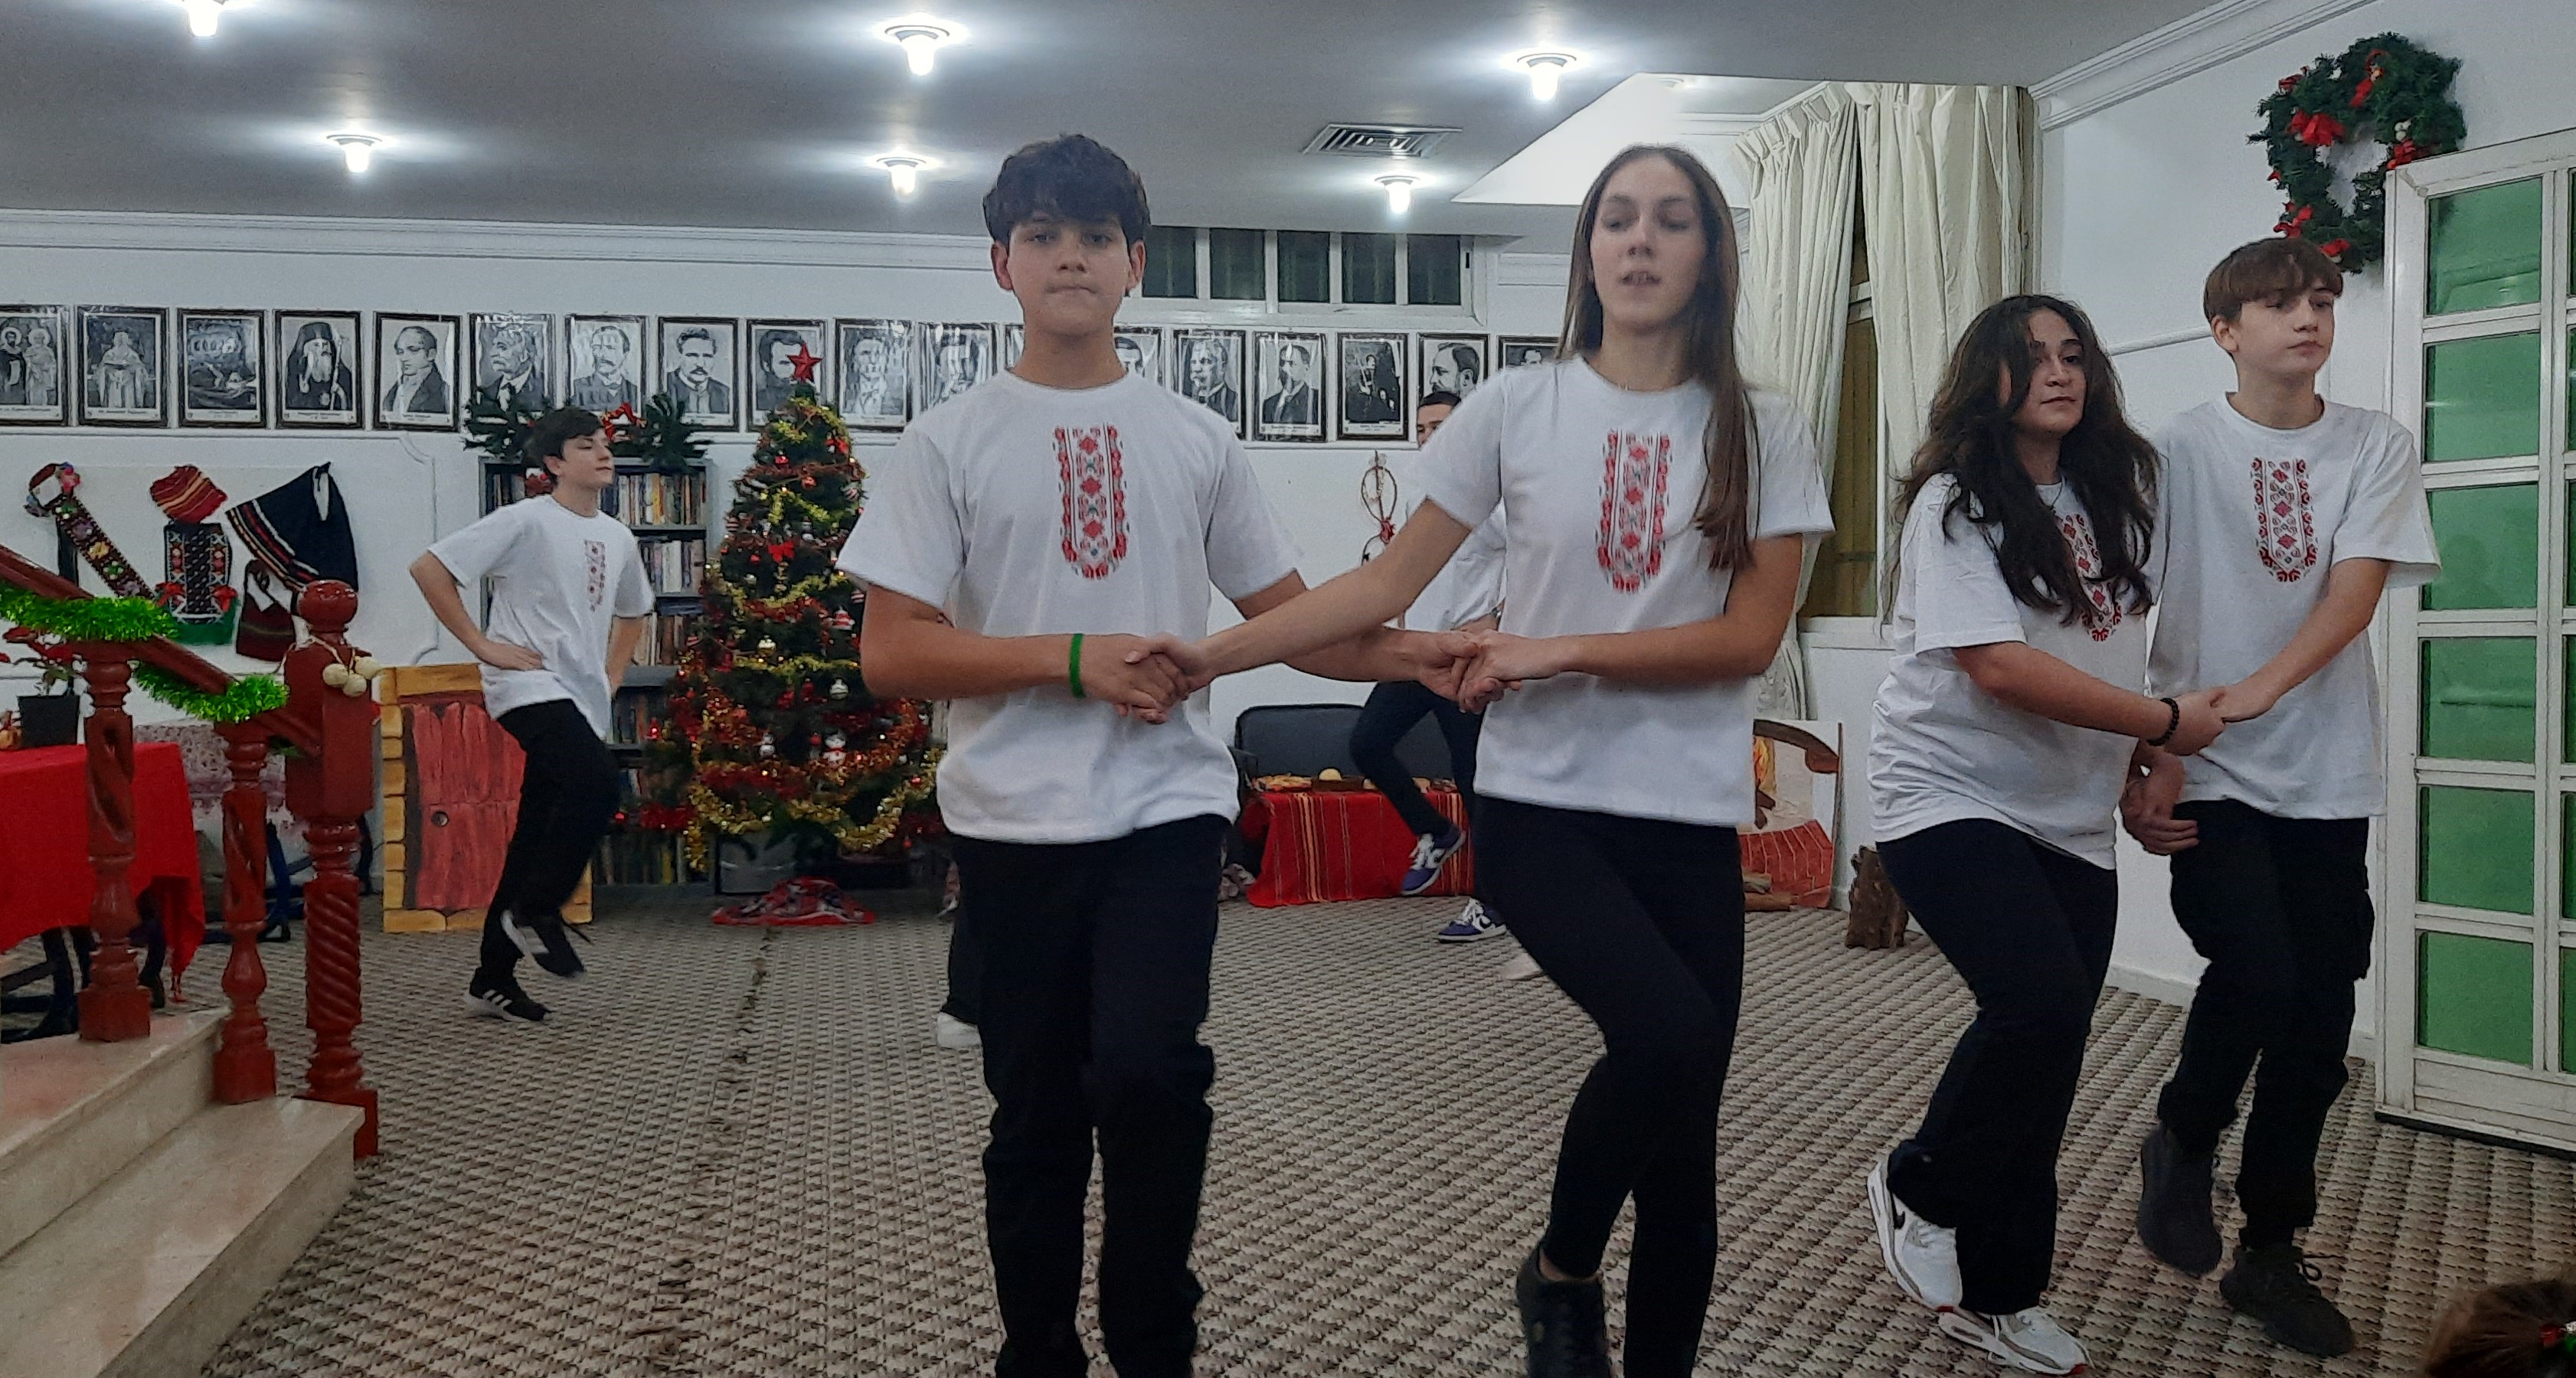 Българската общност и Българско неделно училище „Св. св. Кирил и Методий“ към Посолството ни в Кувейт заедно отпразнуваха наближаващата Коледа